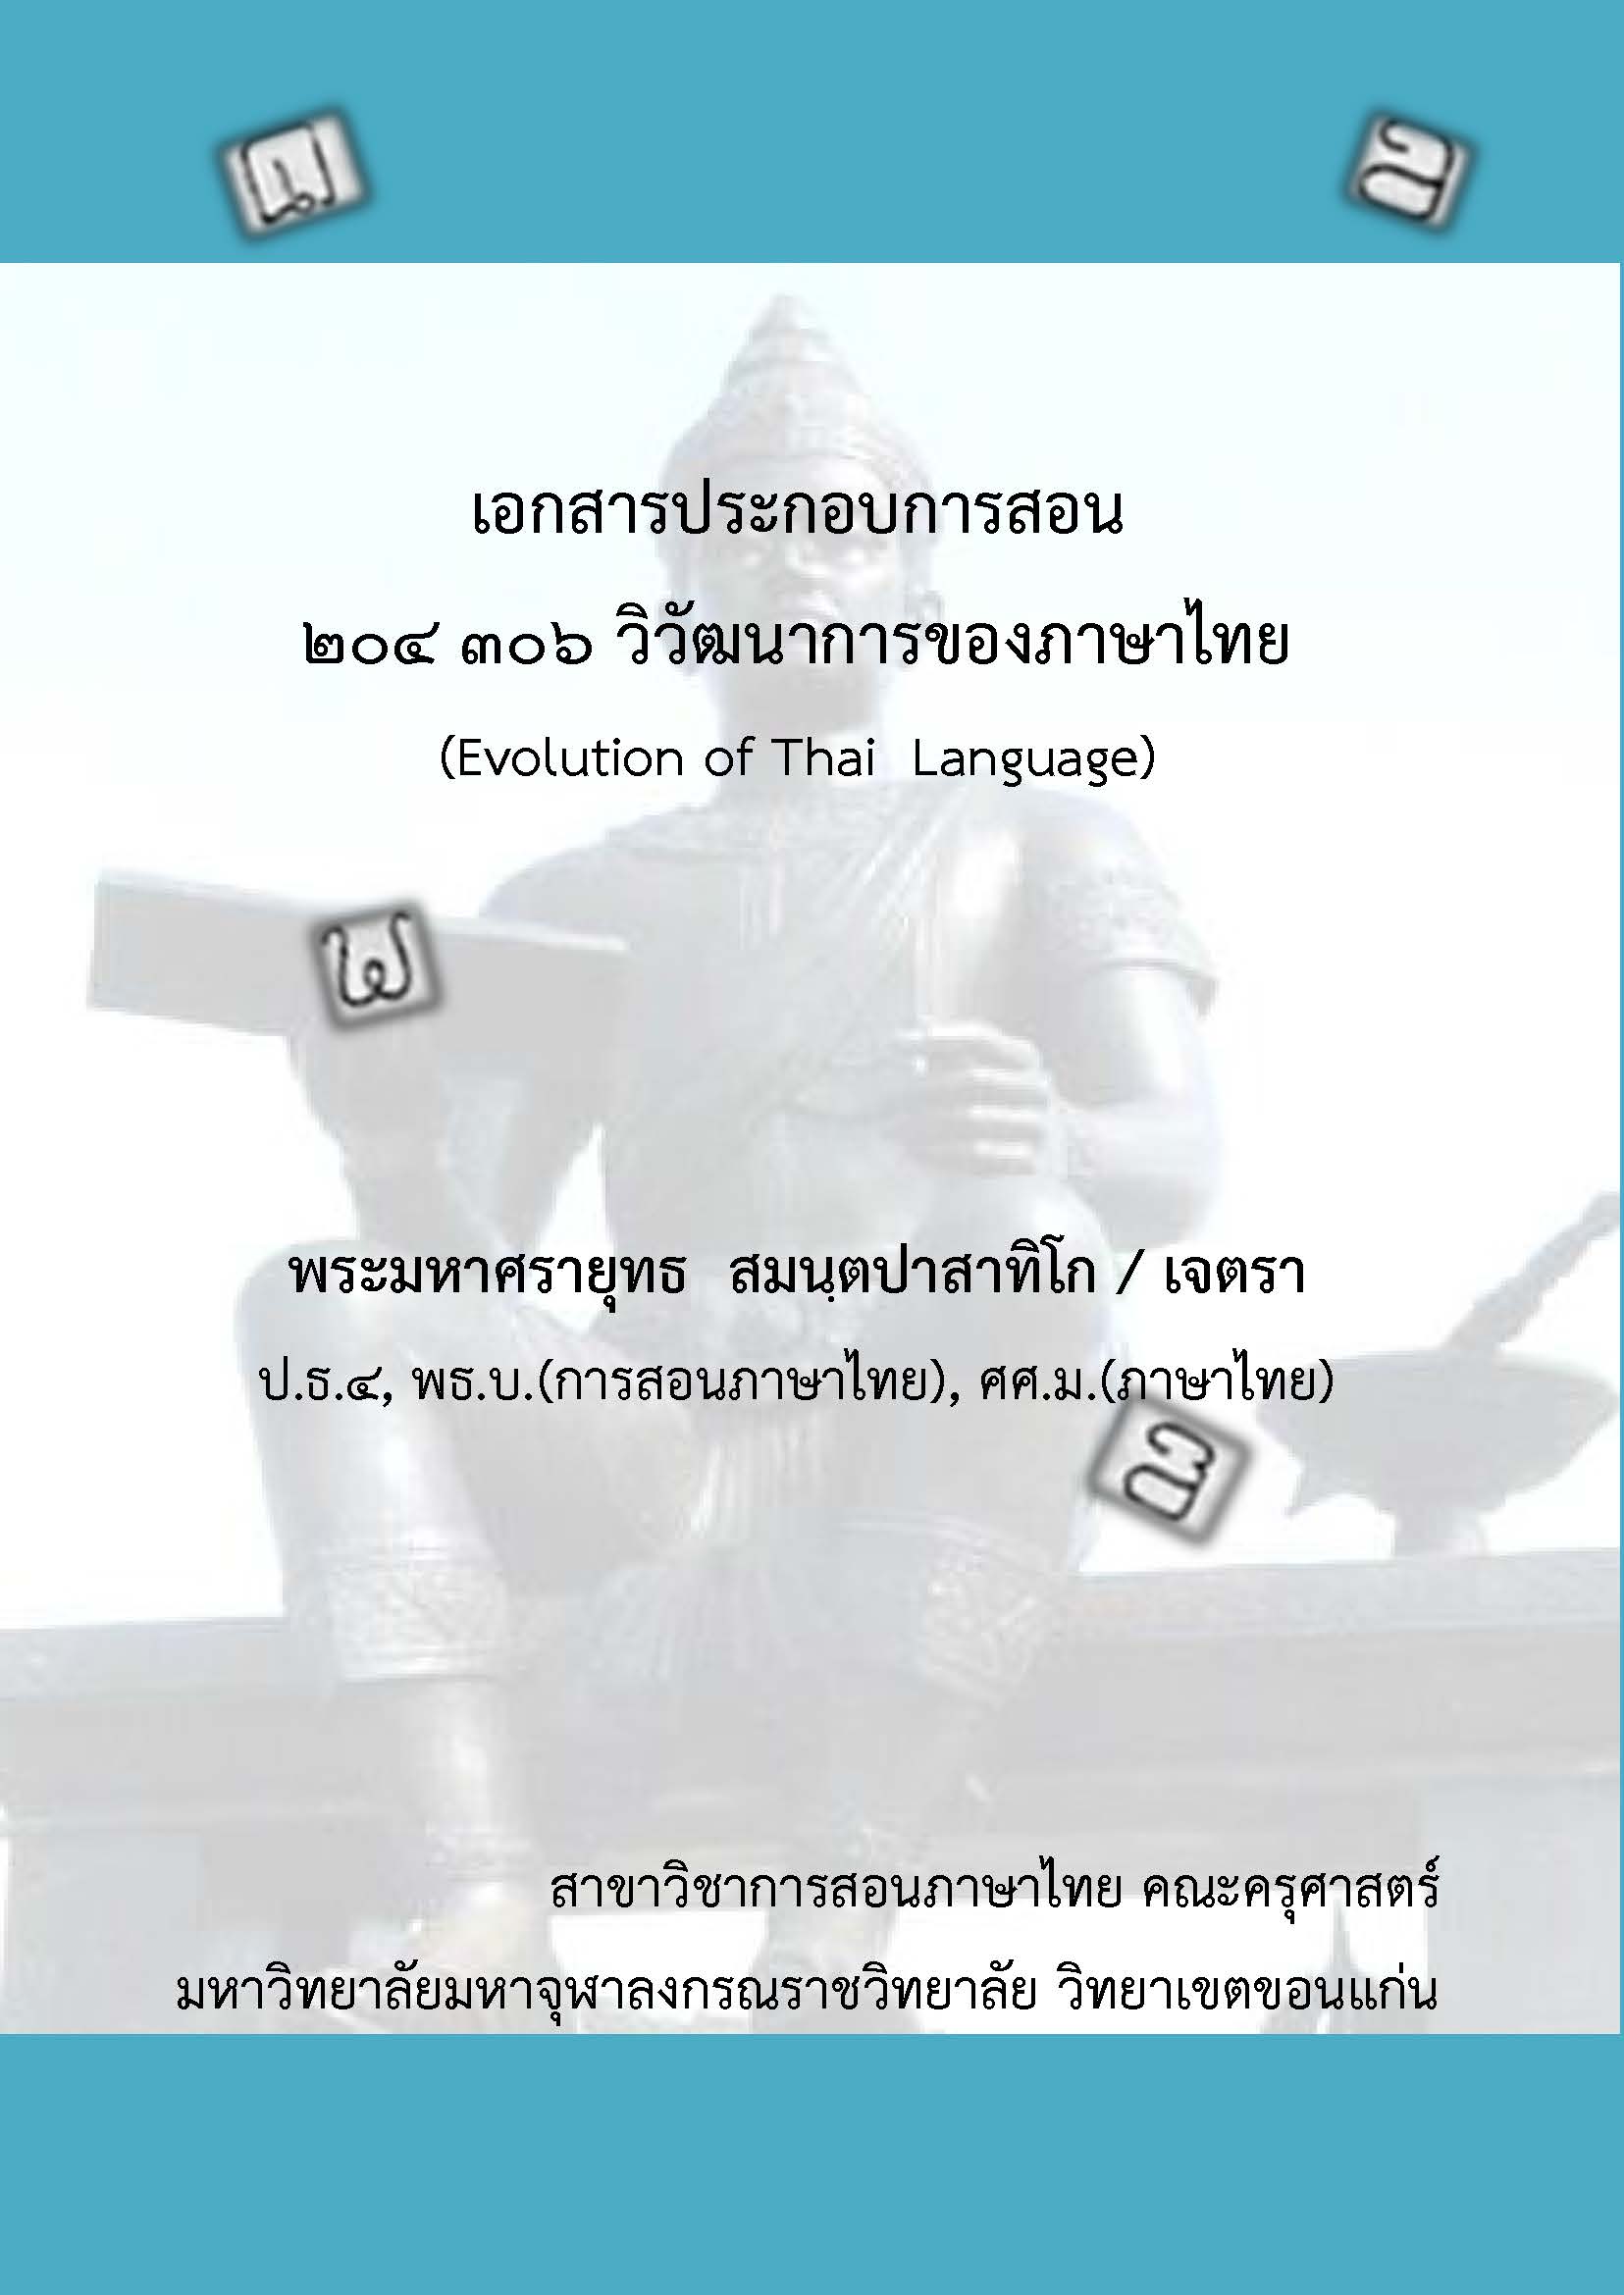 ๒๐๔ ๓๐๕ วิวัฒนาการของภาษาไทย (Evolution of Thai)